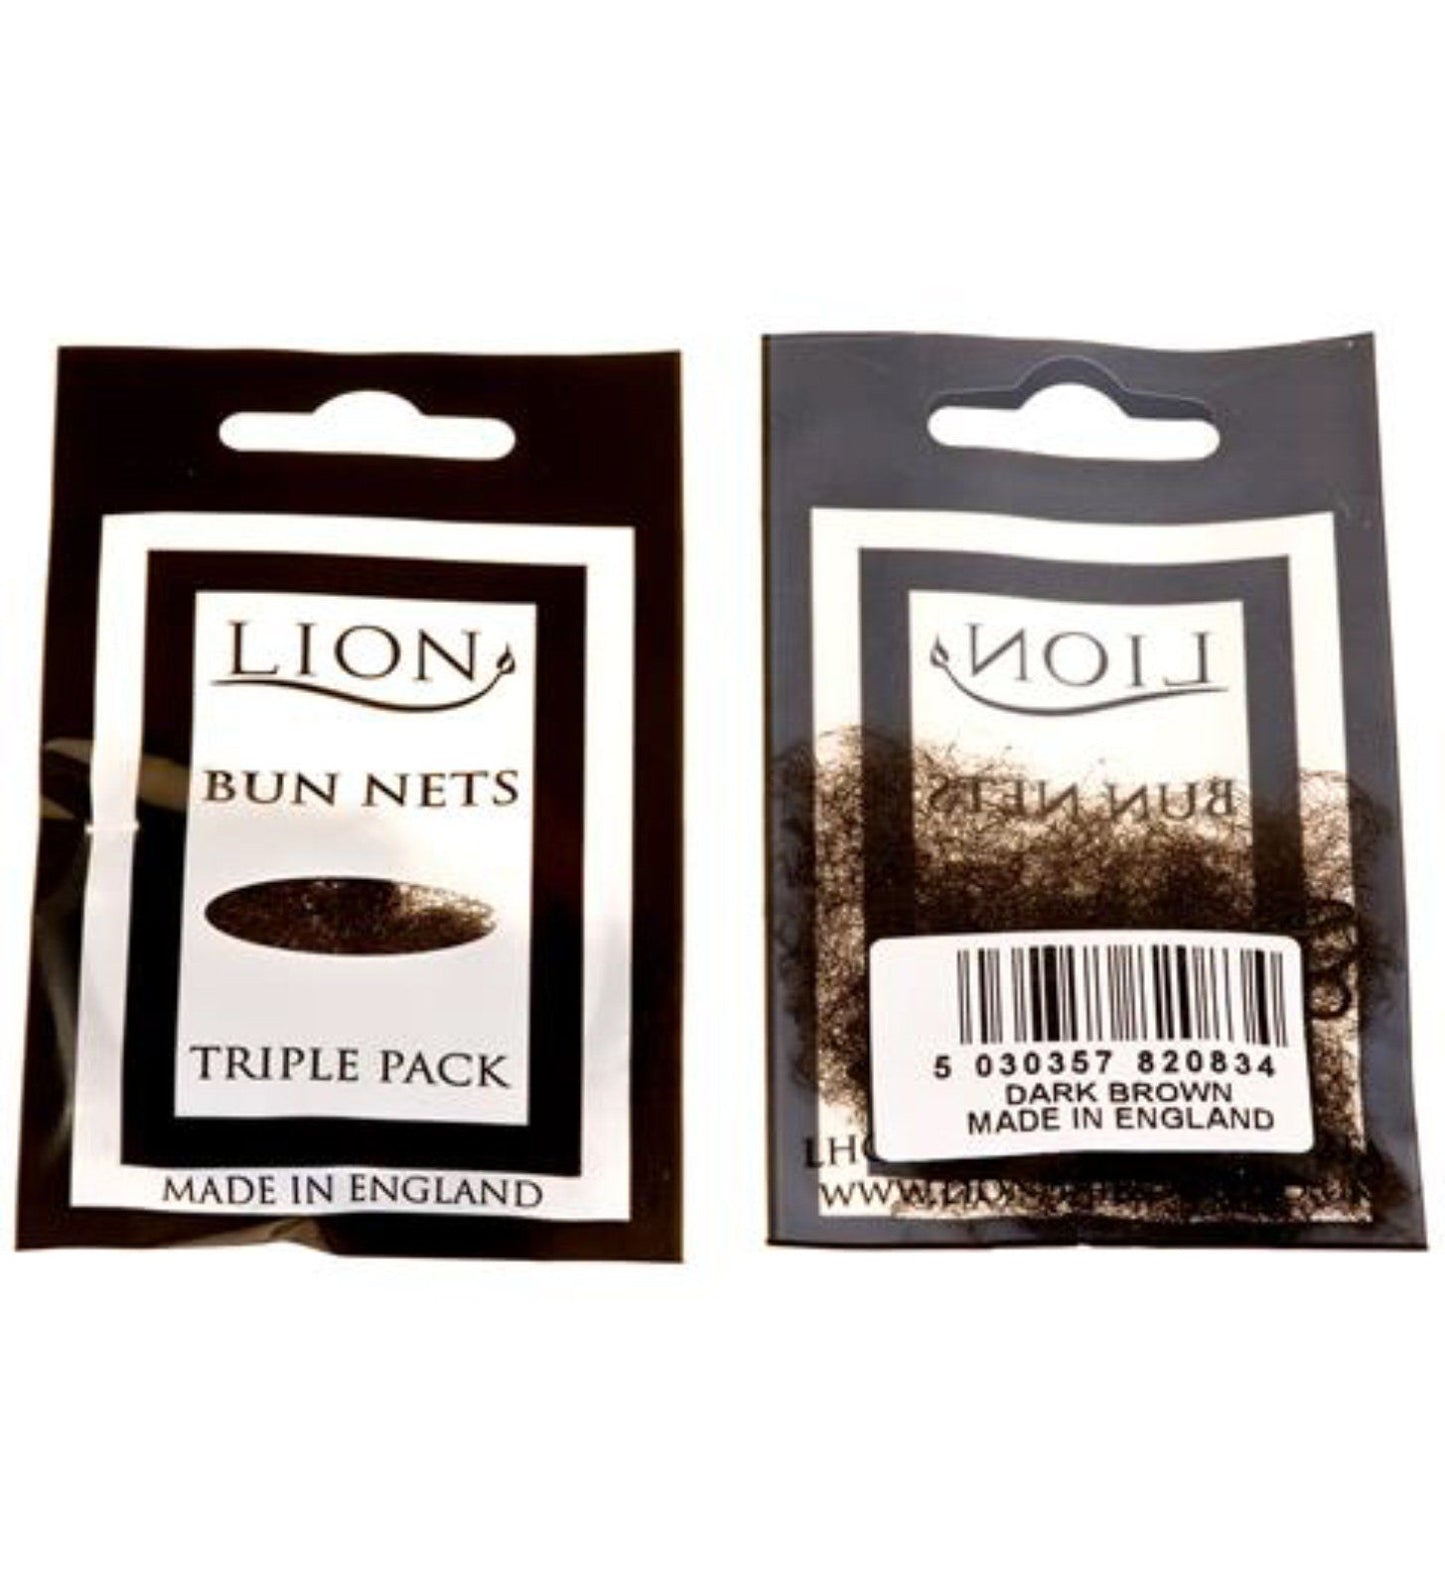 BUN NETS - PACK OF 3 Accessories Lion Dark Brown 